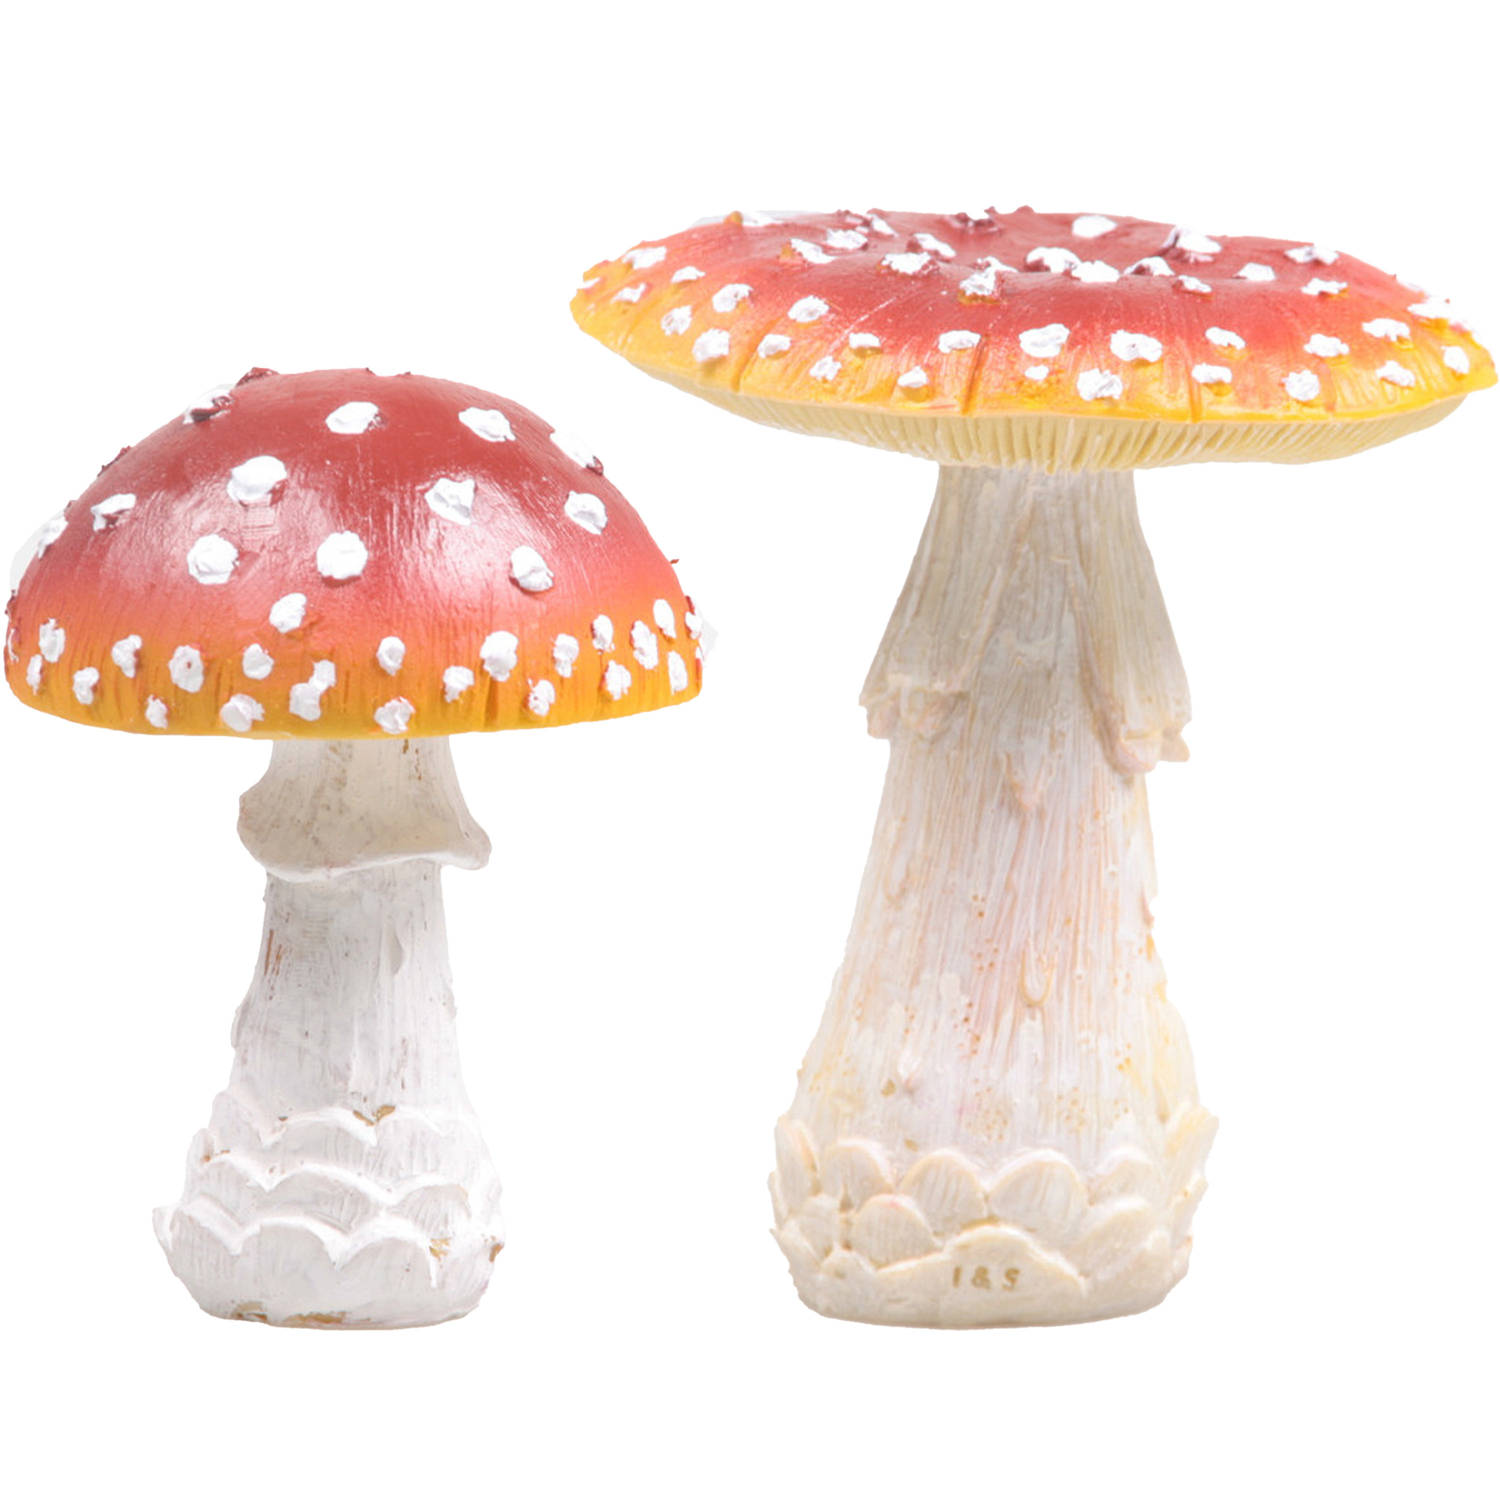 Decoratie paddenstoelen setje met 2x vliegenzwam paddenstoelen herfst thema Tuinbeelden